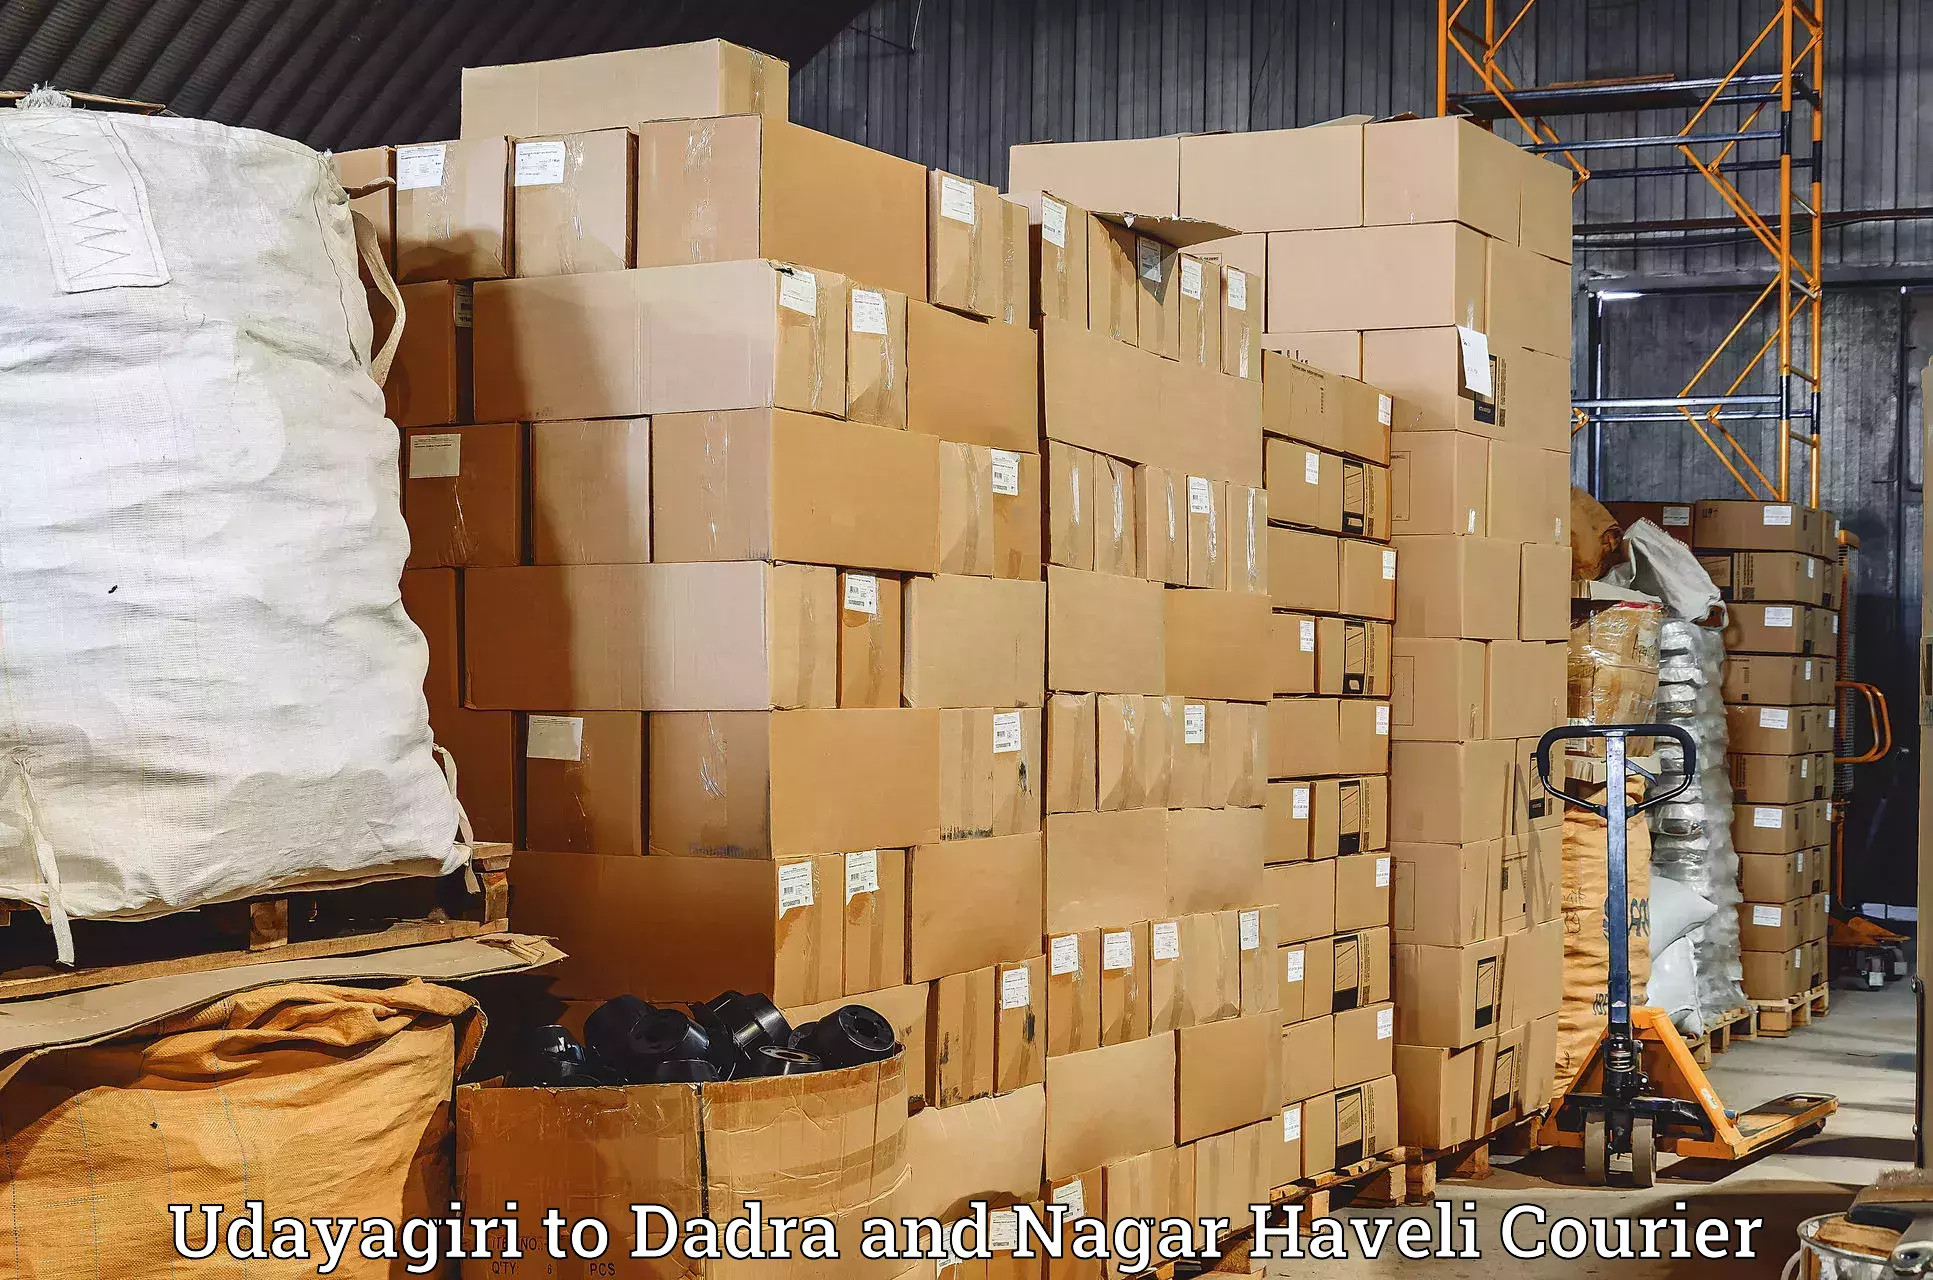 Quality courier partnerships Udayagiri to Dadra and Nagar Haveli